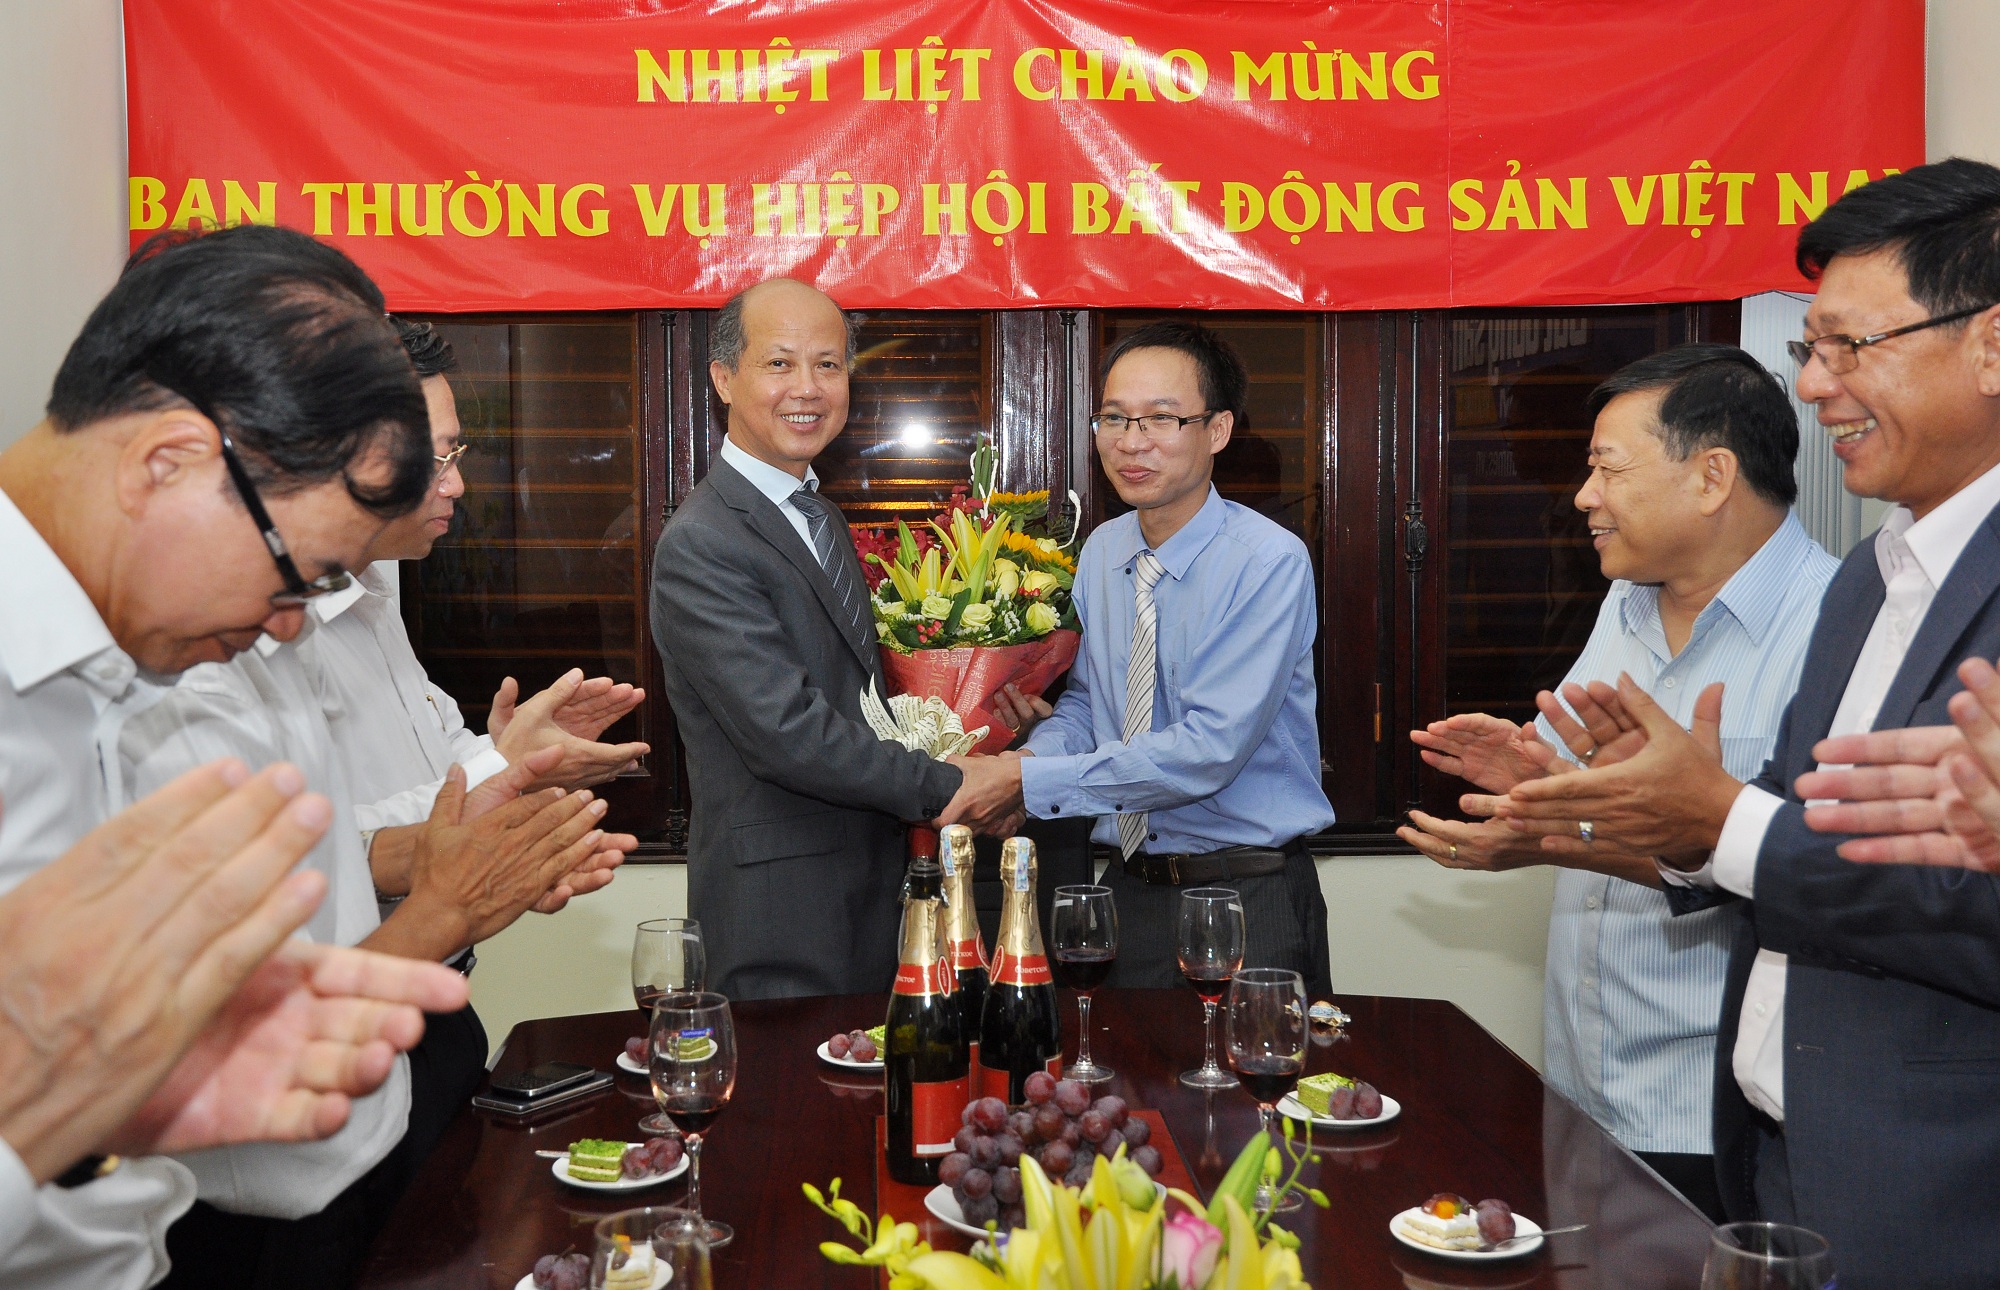 Tổng Biên tậpPhạm Nguyễn Toan tặng hoa cảm ơn Chủ tịch Hiệp hội Bất động sản Việt Nam.Ảnh: Trần Kháng.